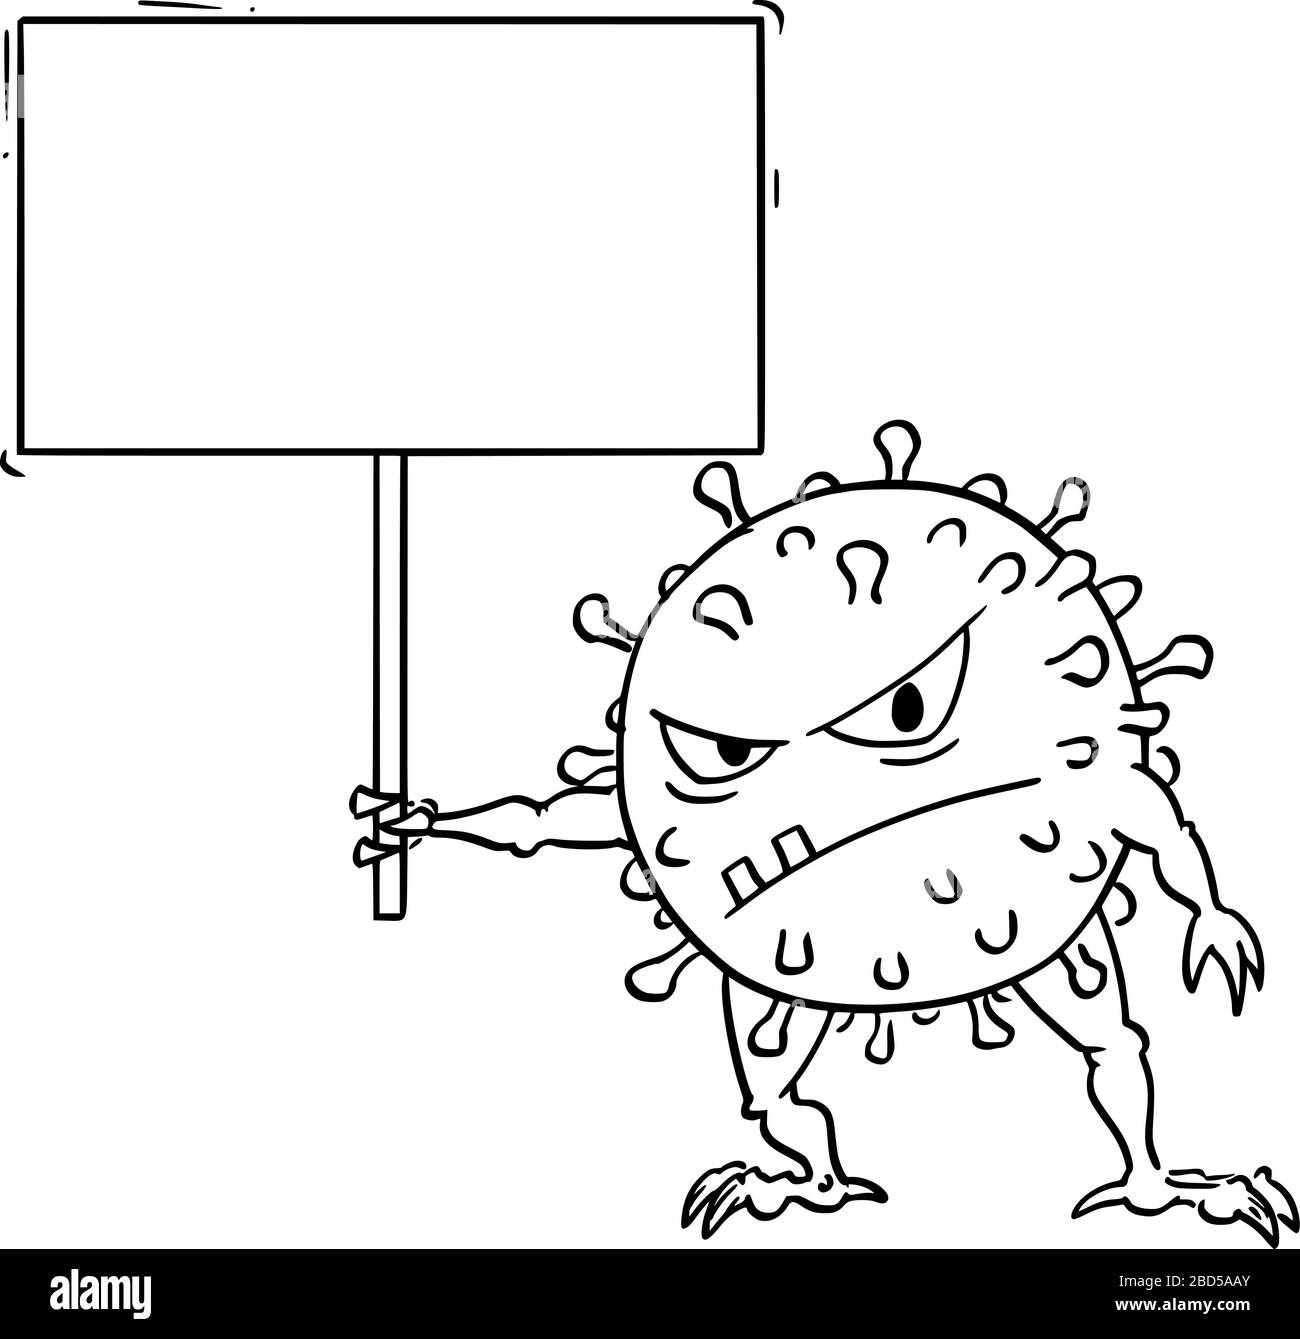 Vektor-Cartoon lustige Illustration von lustigen Coronavirus COVID-19-Virus-Monster mit leerem Schild für Ihren Text. Stock Vektor